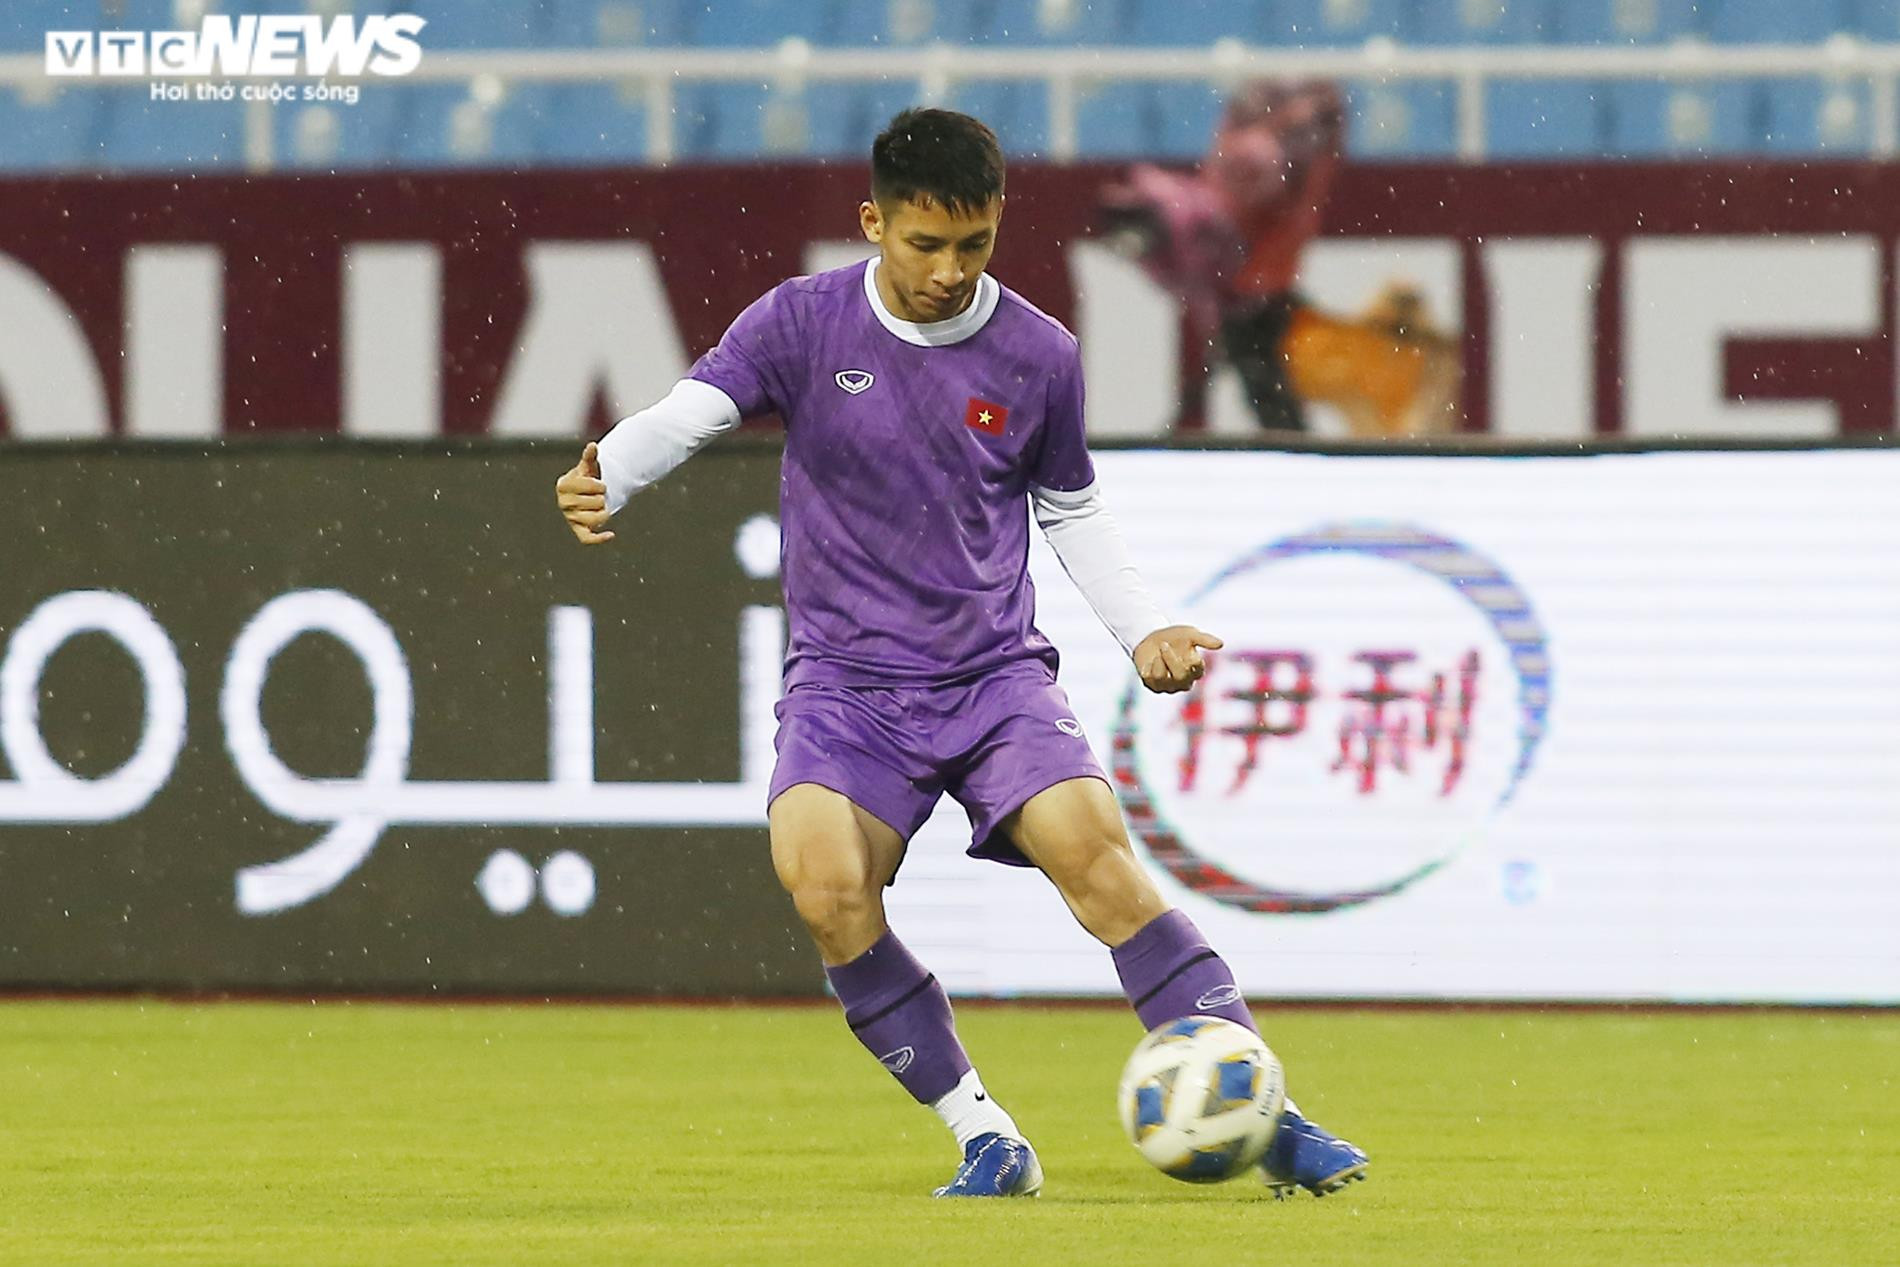 HLV Park Hang Seo đăm chiêu trước ngày tuyển Việt Nam đấu Oman - 7